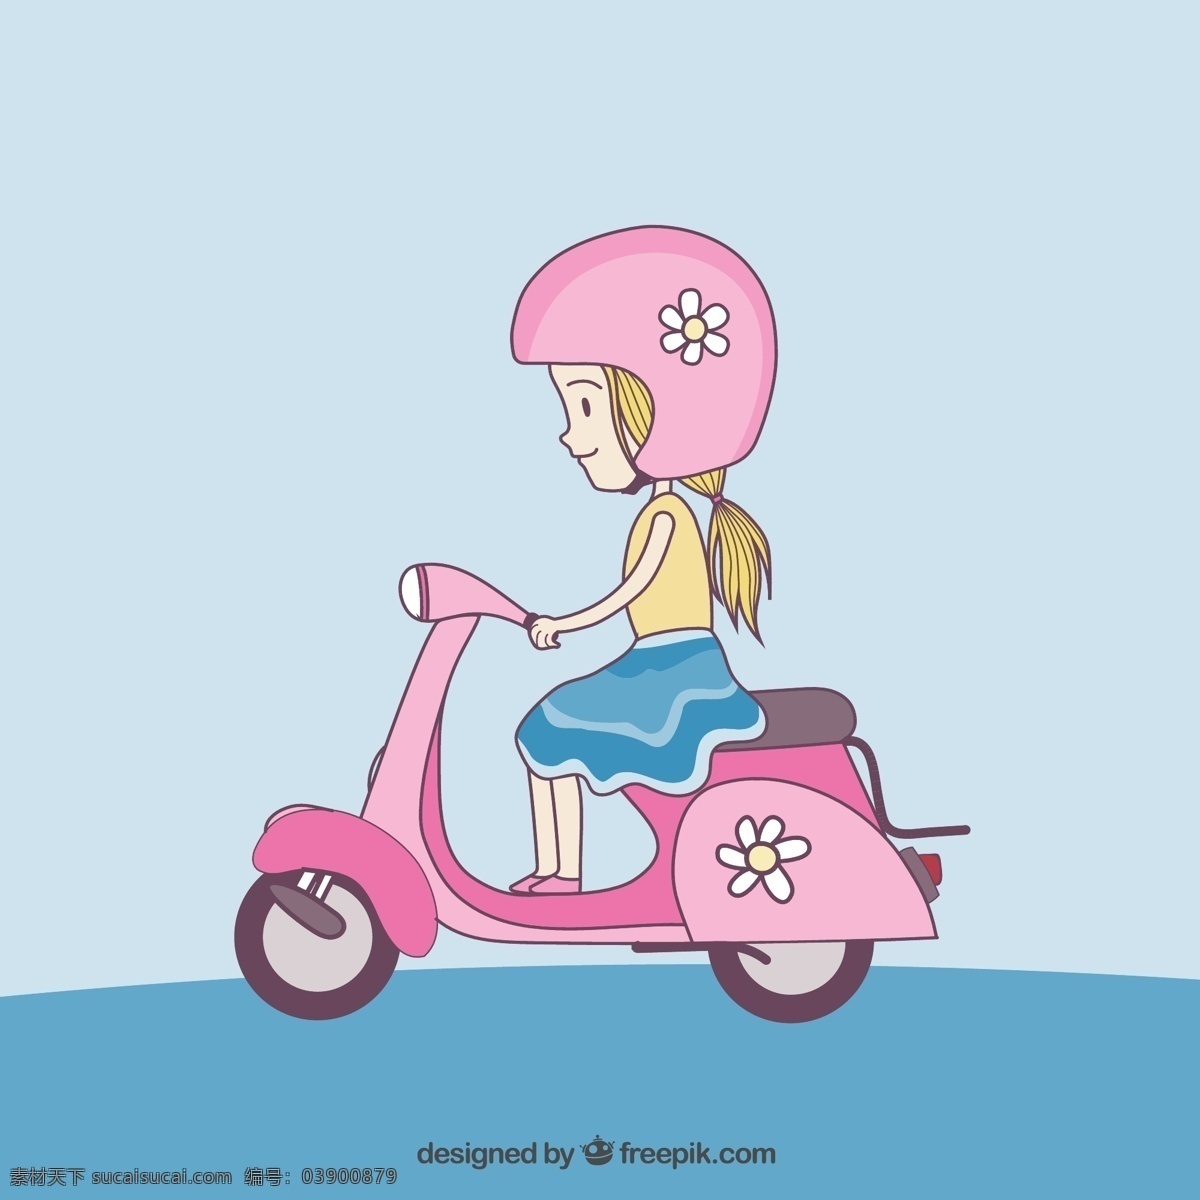 骑 电动车 女孩 交通 女孩物 矢量图 格式 矢量 高清图片